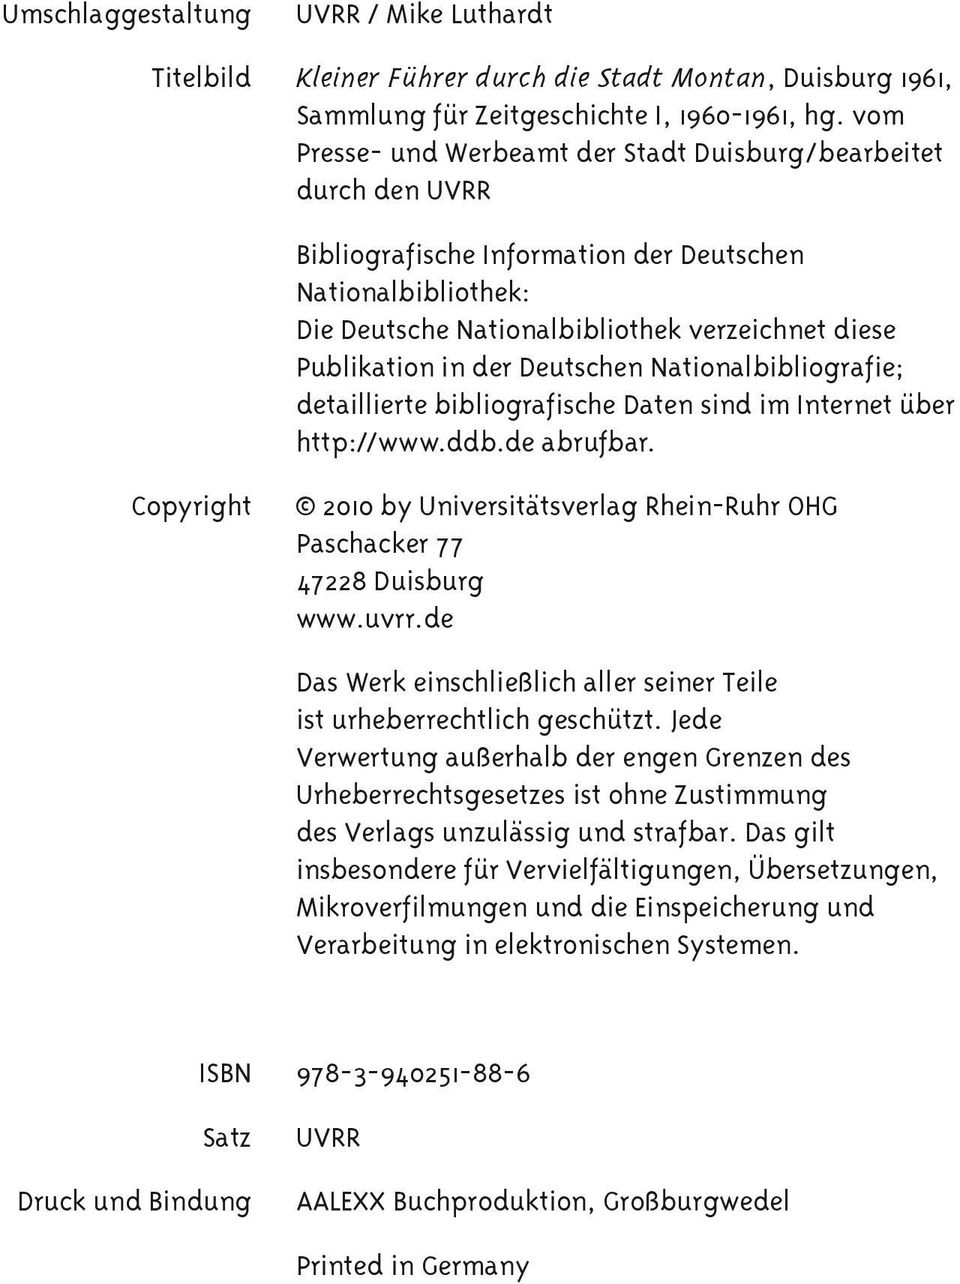 der Deutschen Nationalbibliografie; detaillierte bibliografische Daten sind im Internet über http://www.ddb.de abrufbar.